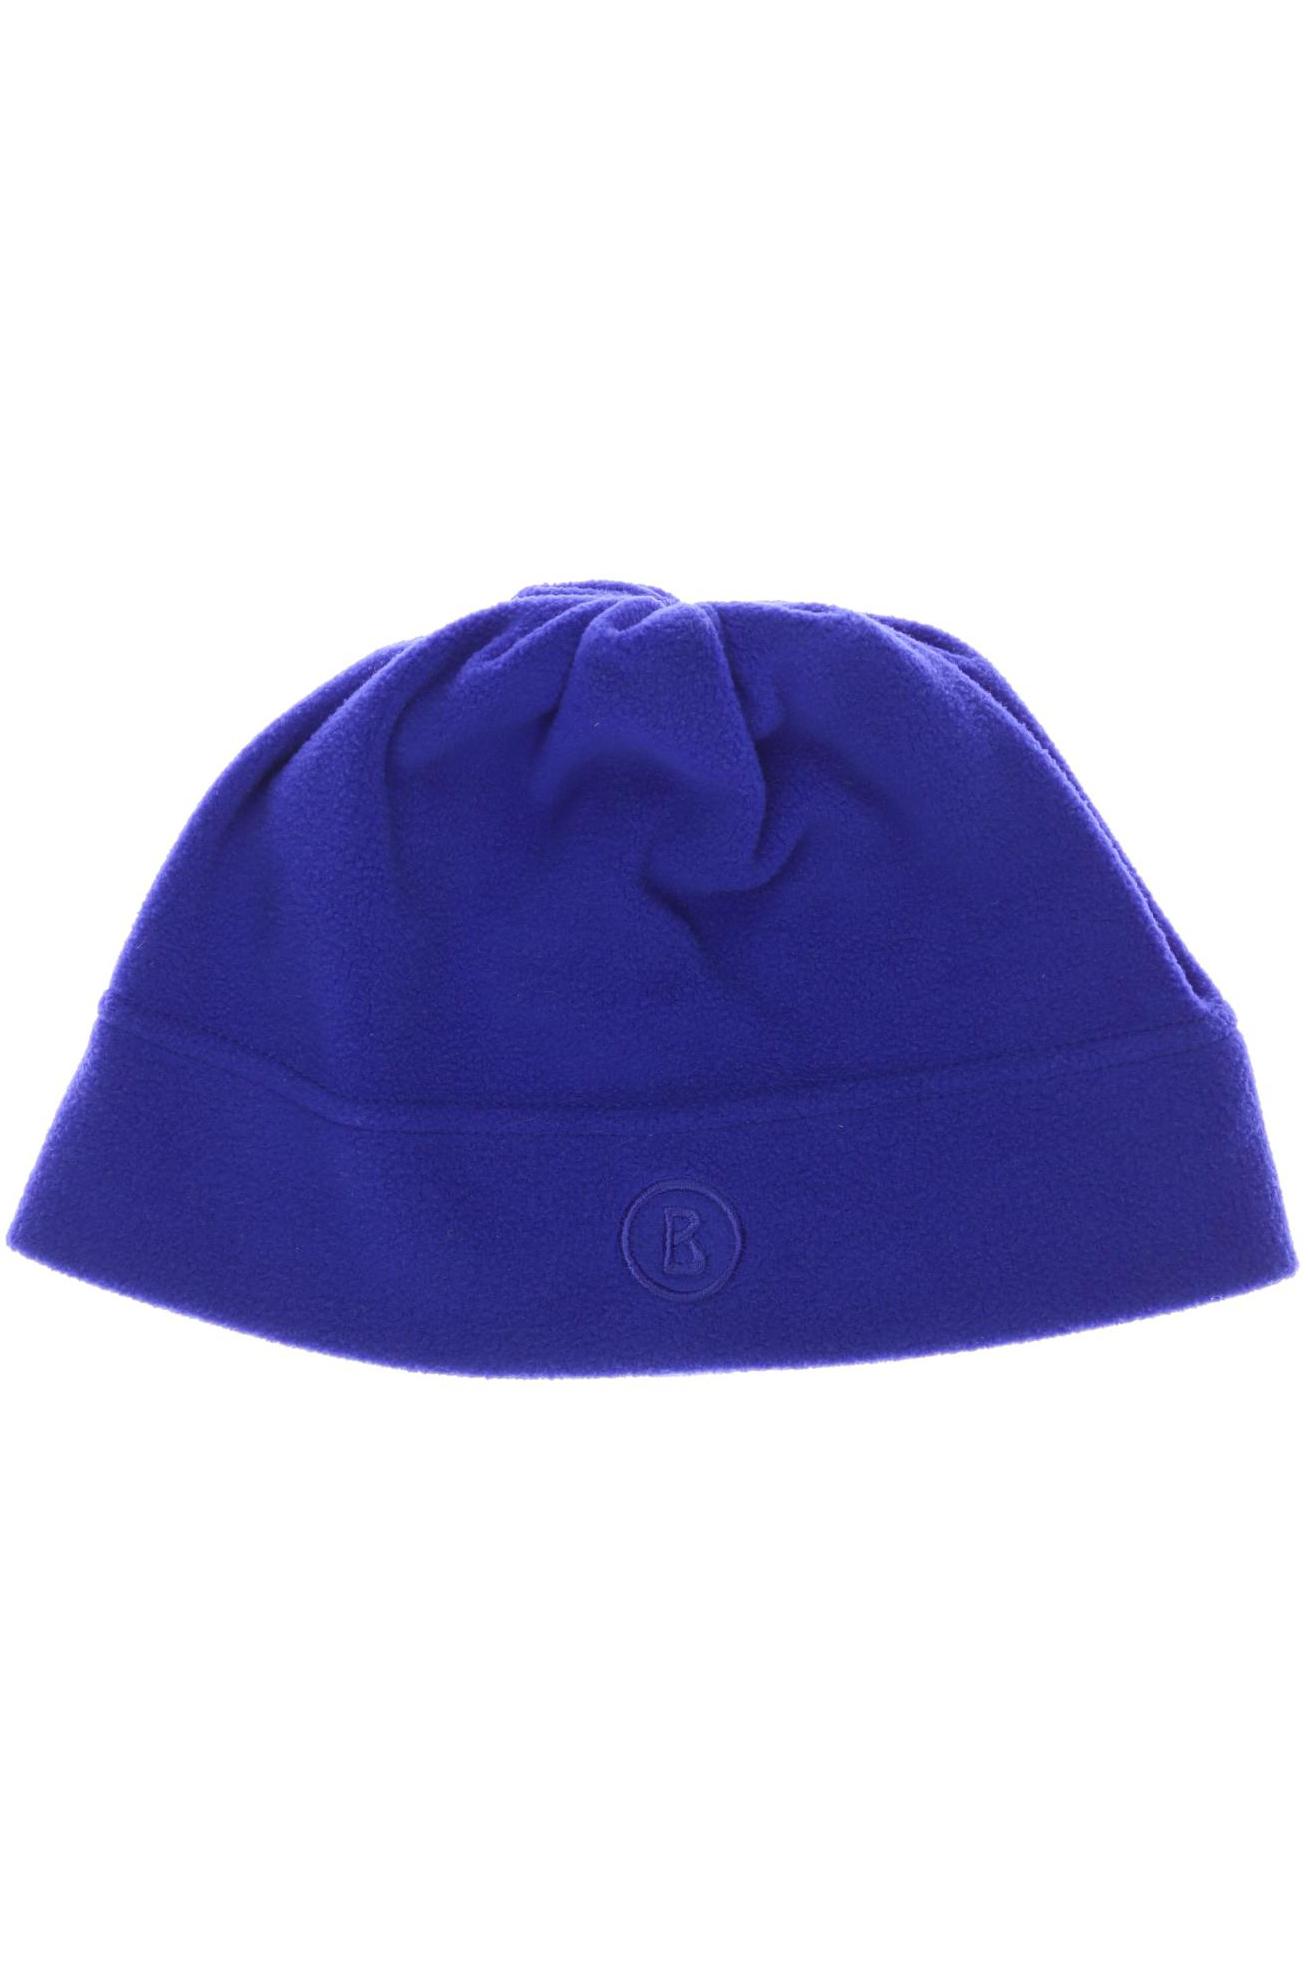 Bogner Damen Hut/Mütze, blau von Bogner